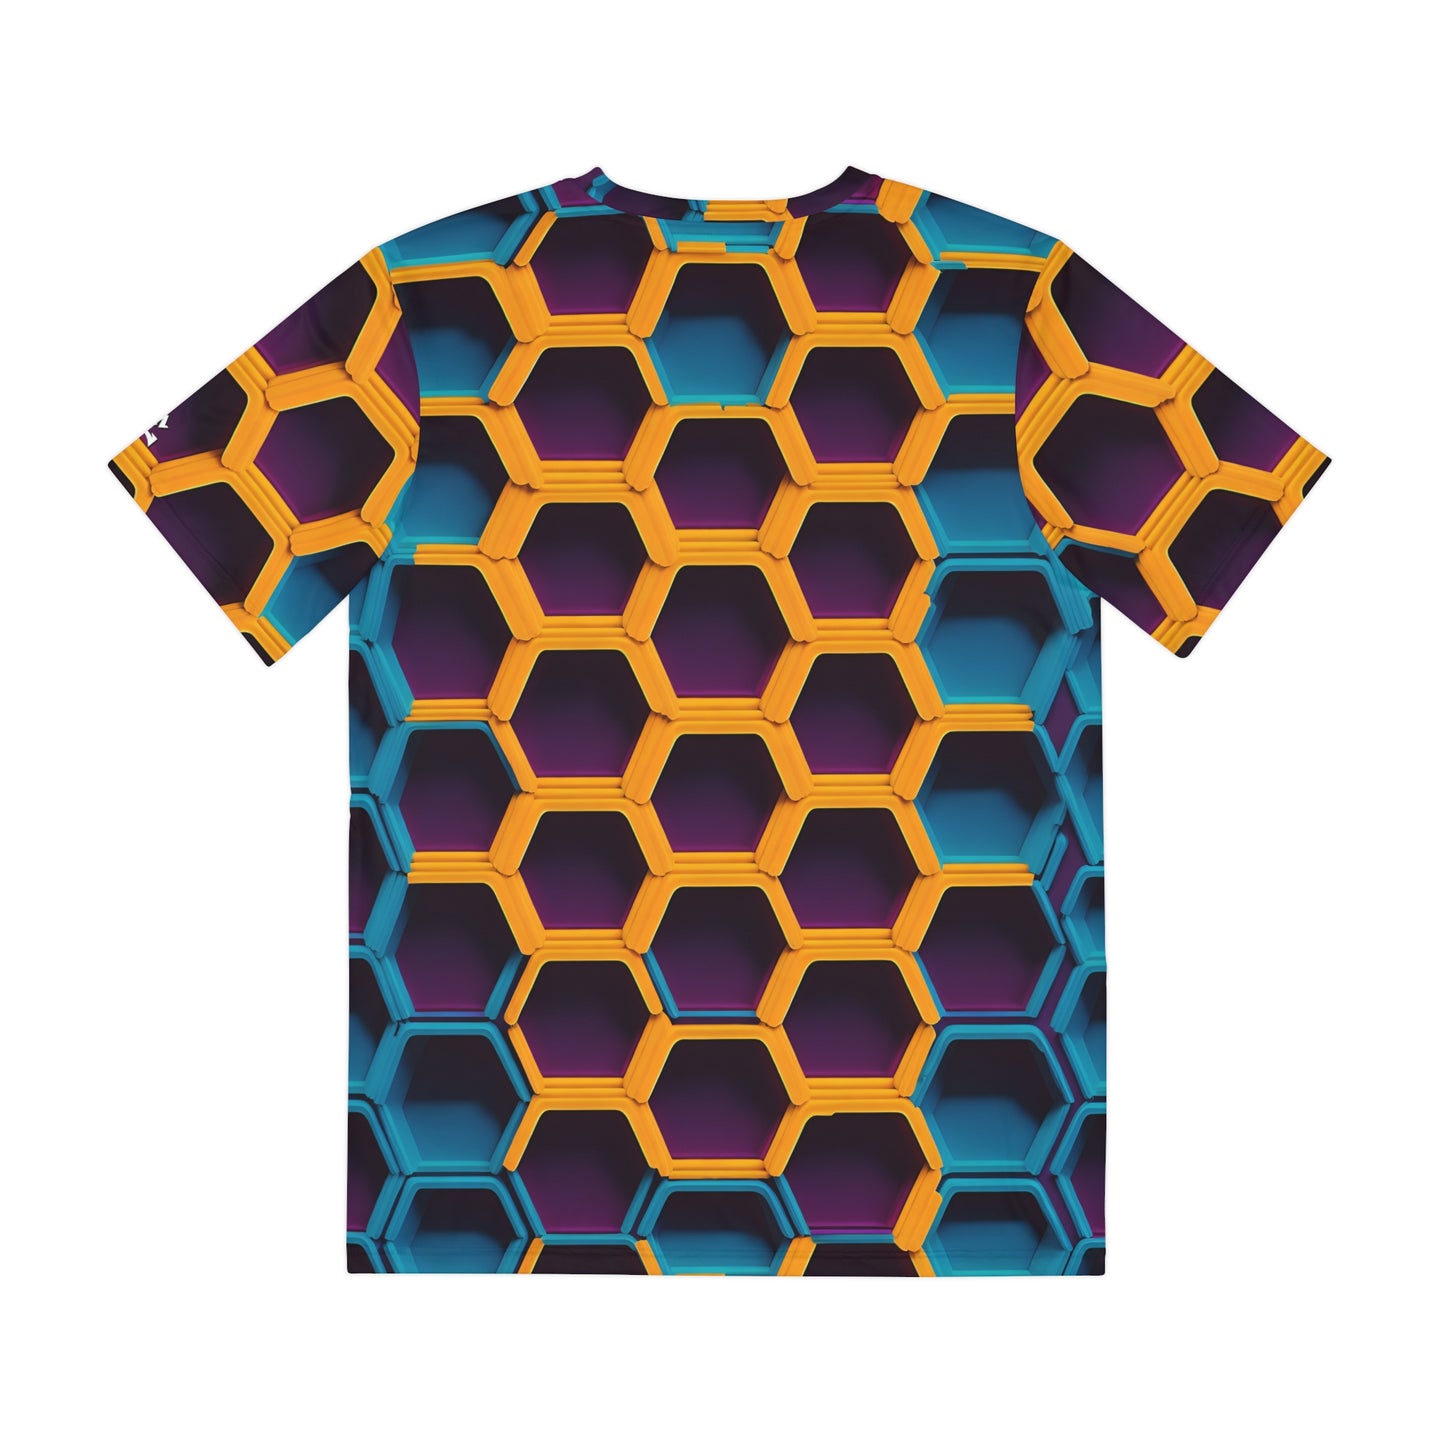 Luminous Hexagons: Neon Honeycomb